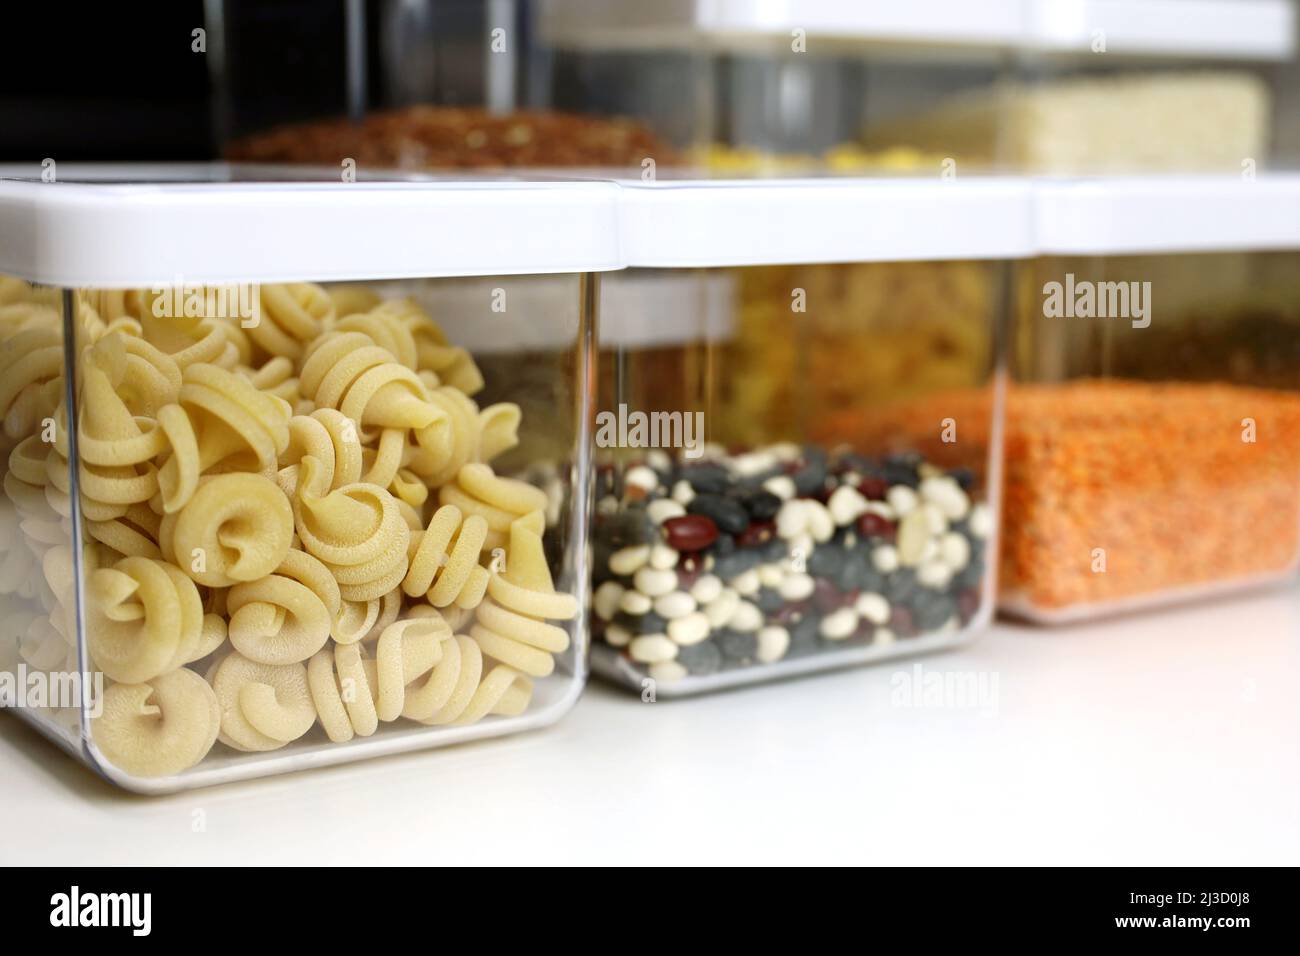 Contenitori trasparenti riempiti di pasta, legumi e cereali in cucina. Organizzazione di deposito di alimento sfuso Foto Stock